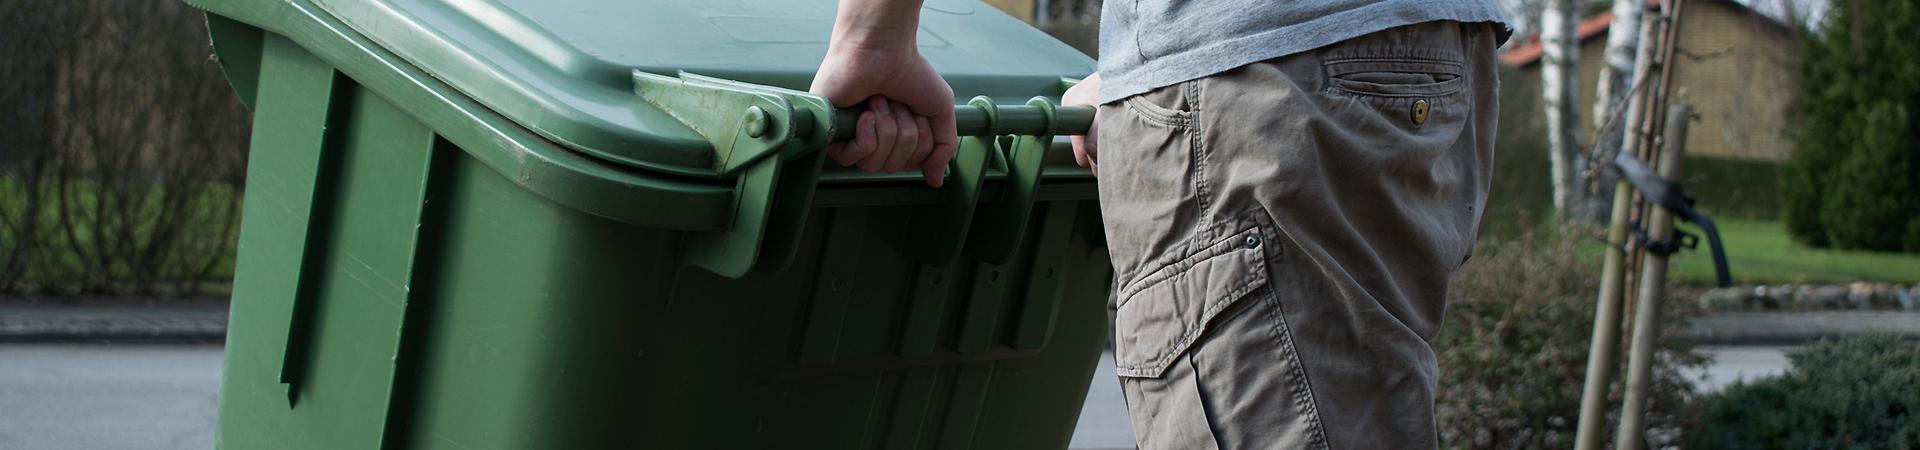 En mand som trækker en grøn affaldsbeholder i plast